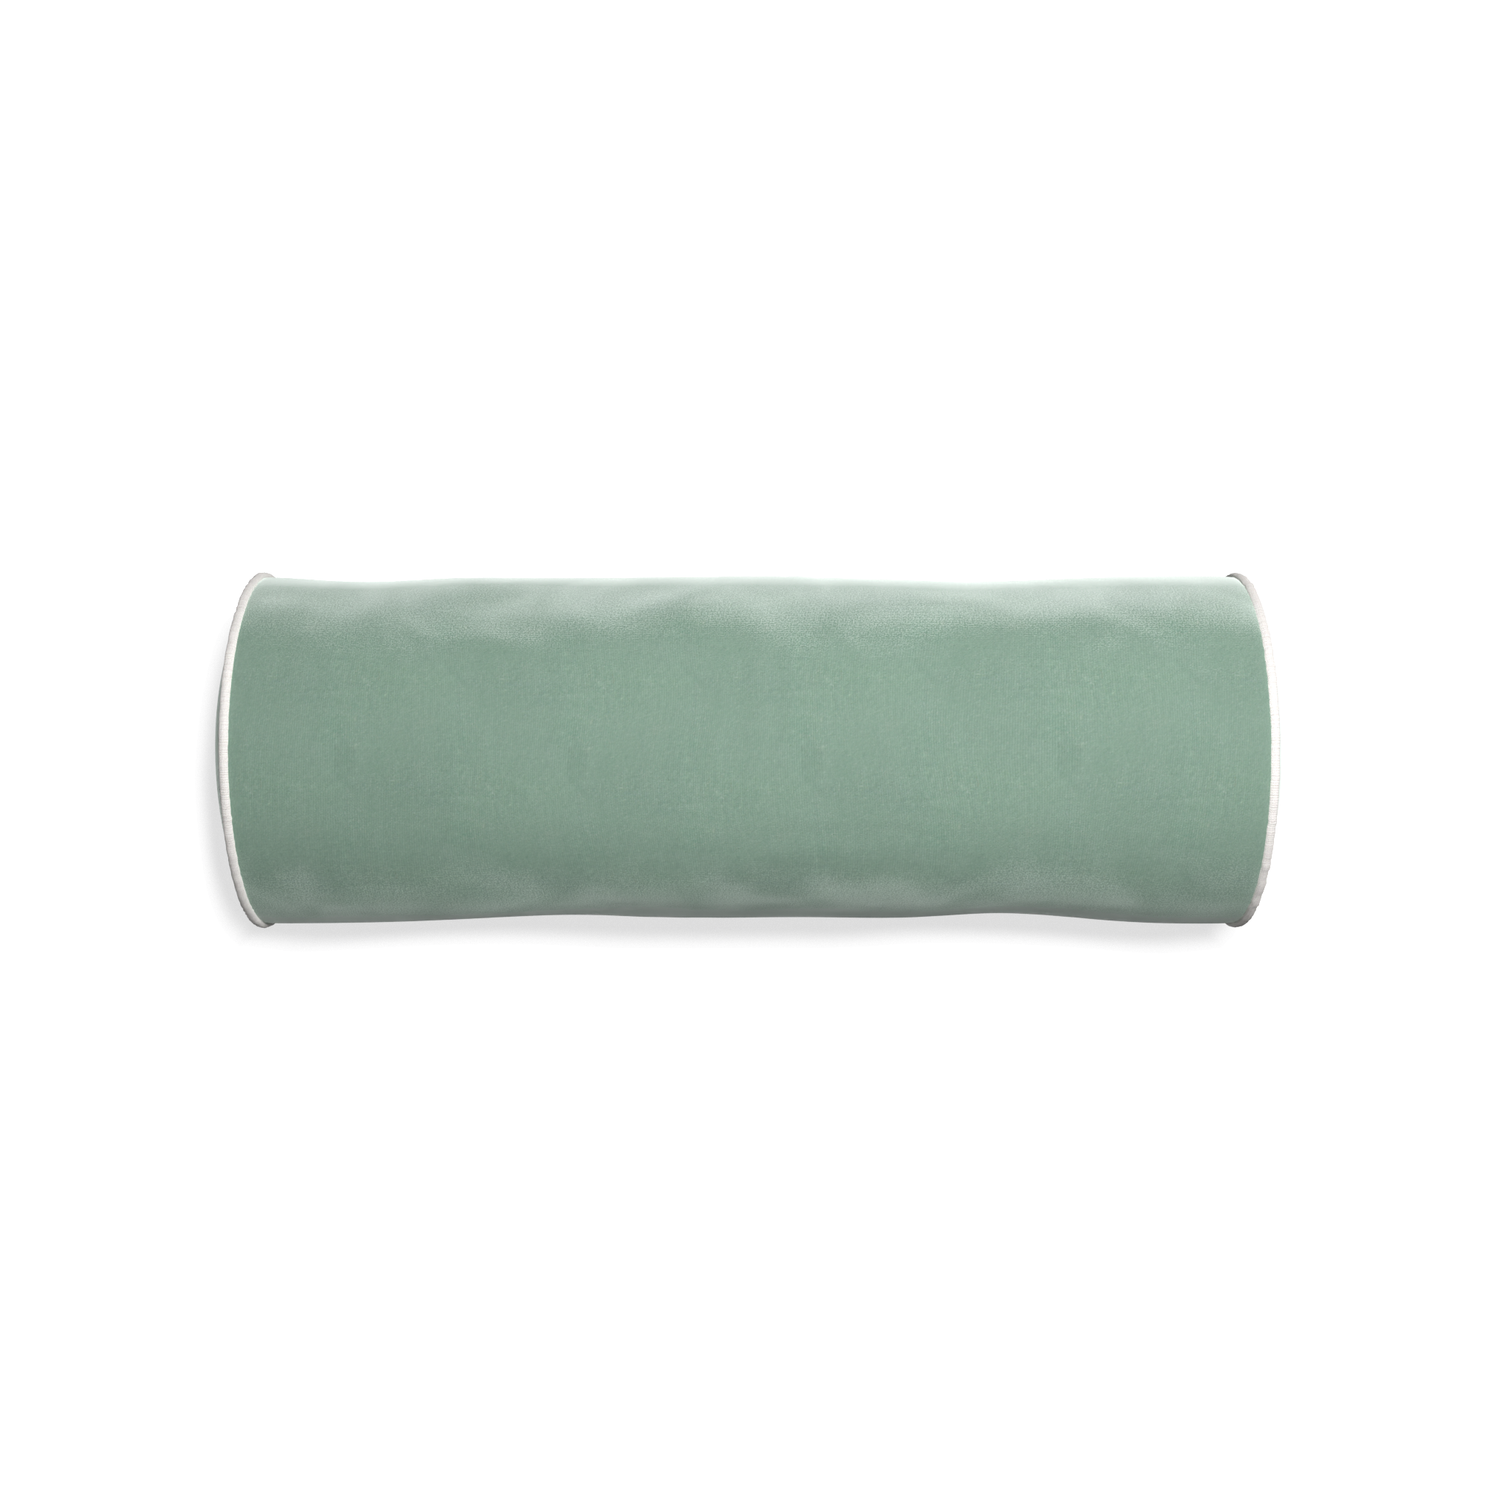 bolster blue green velvet pillow with white piping